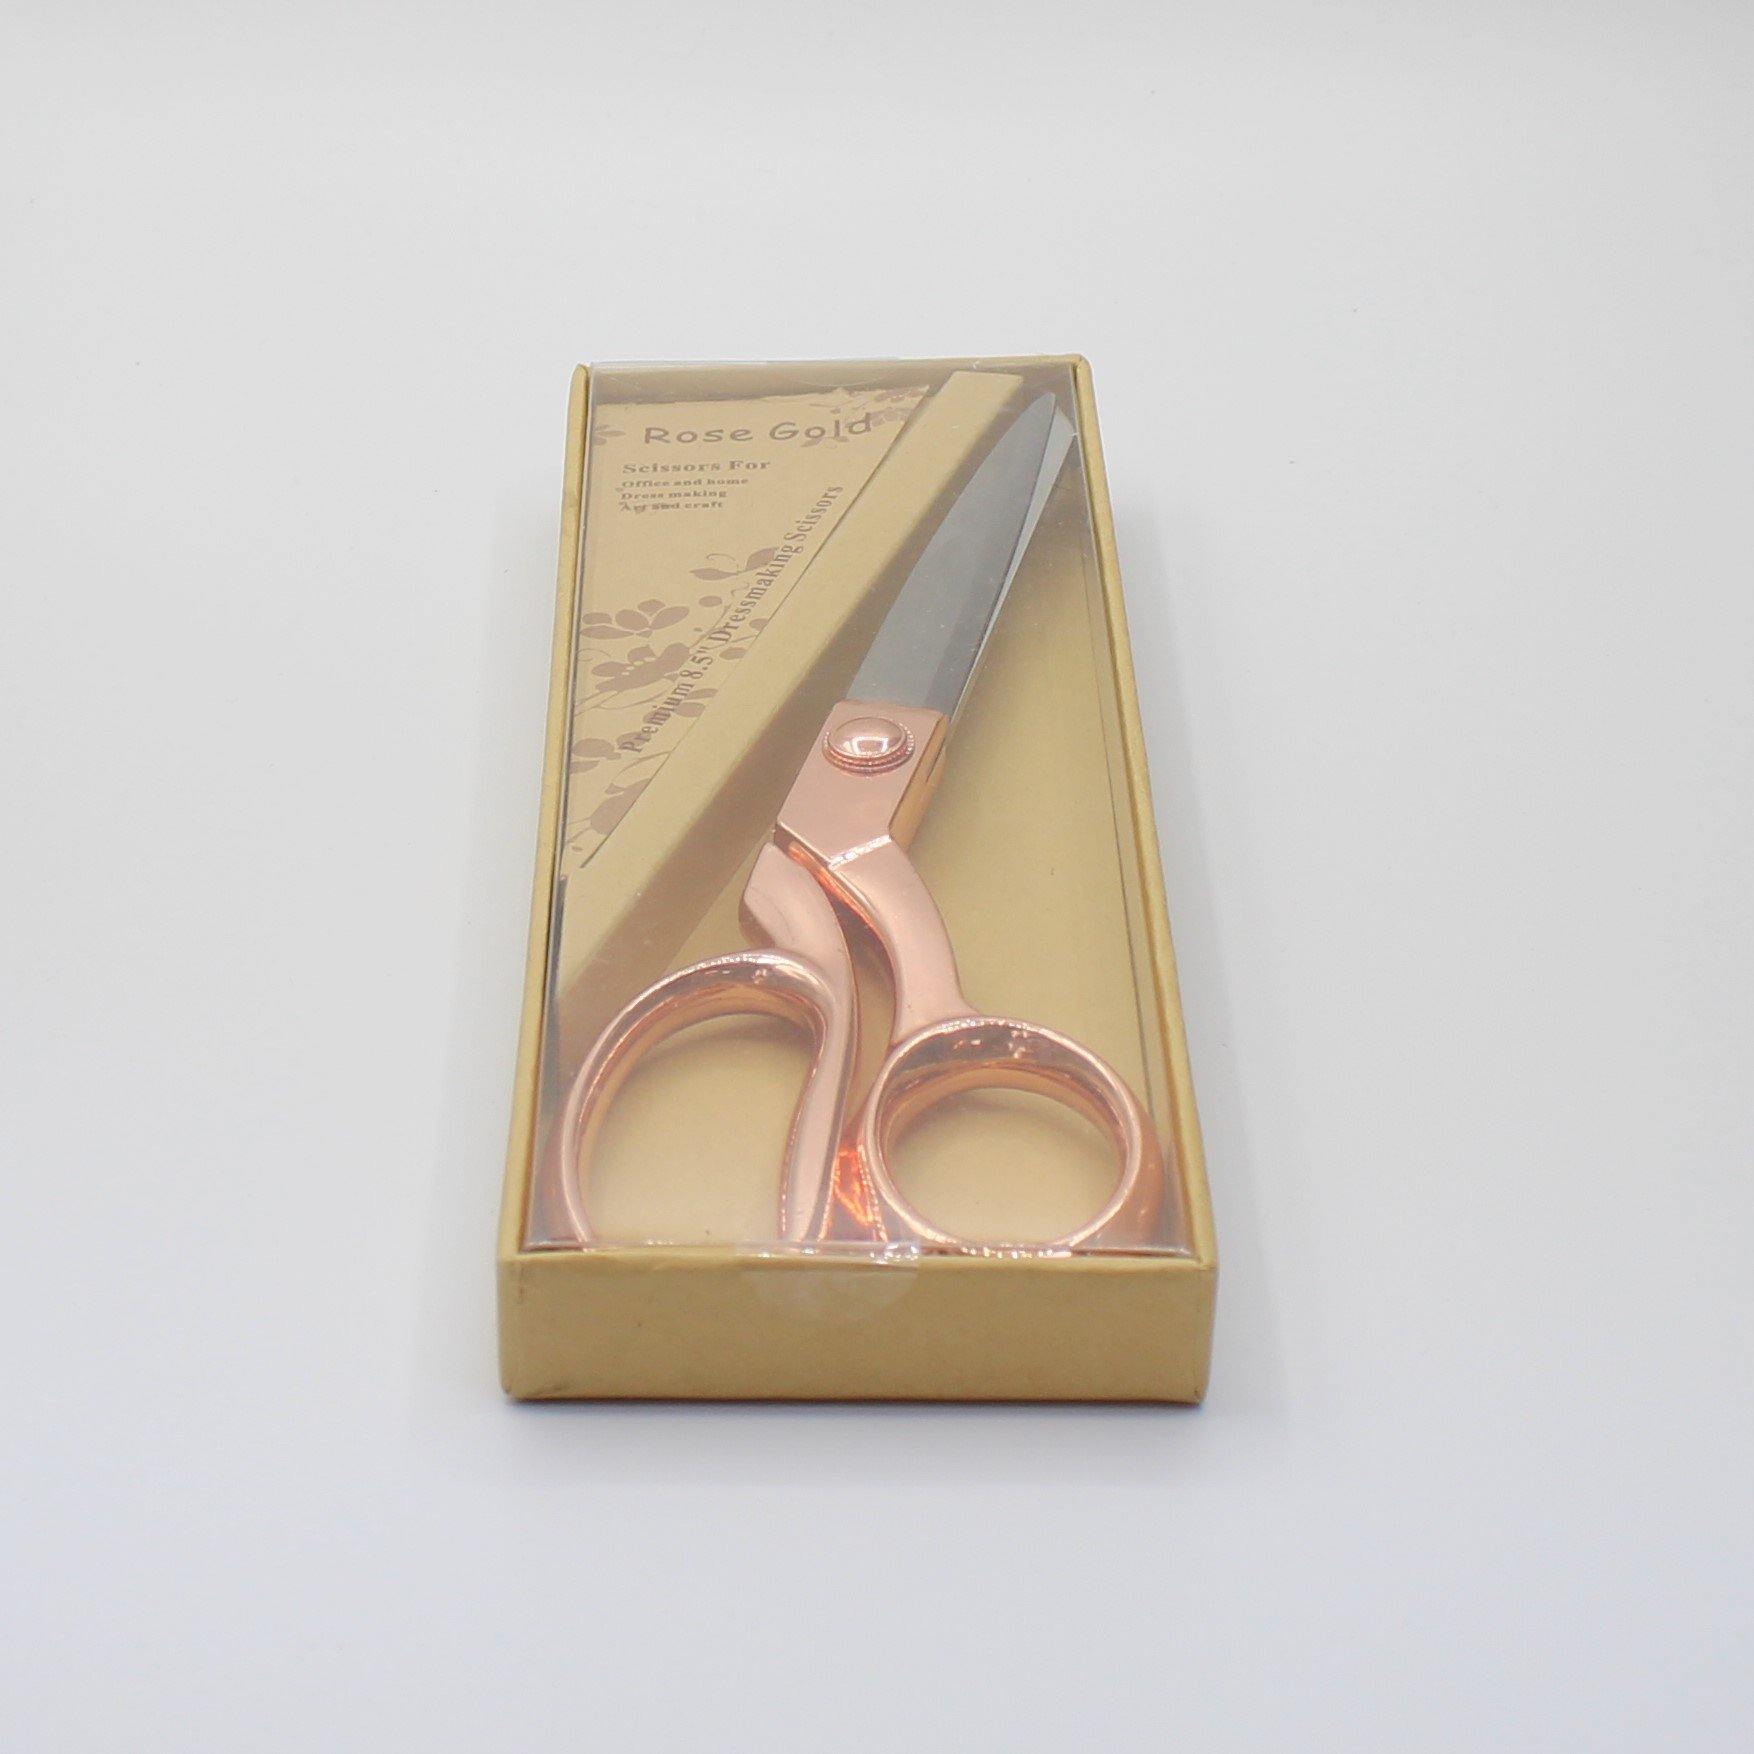 Dressmaker Scissors Pink Gold / Silver 21cm - ACCESSOIRES LEDUC